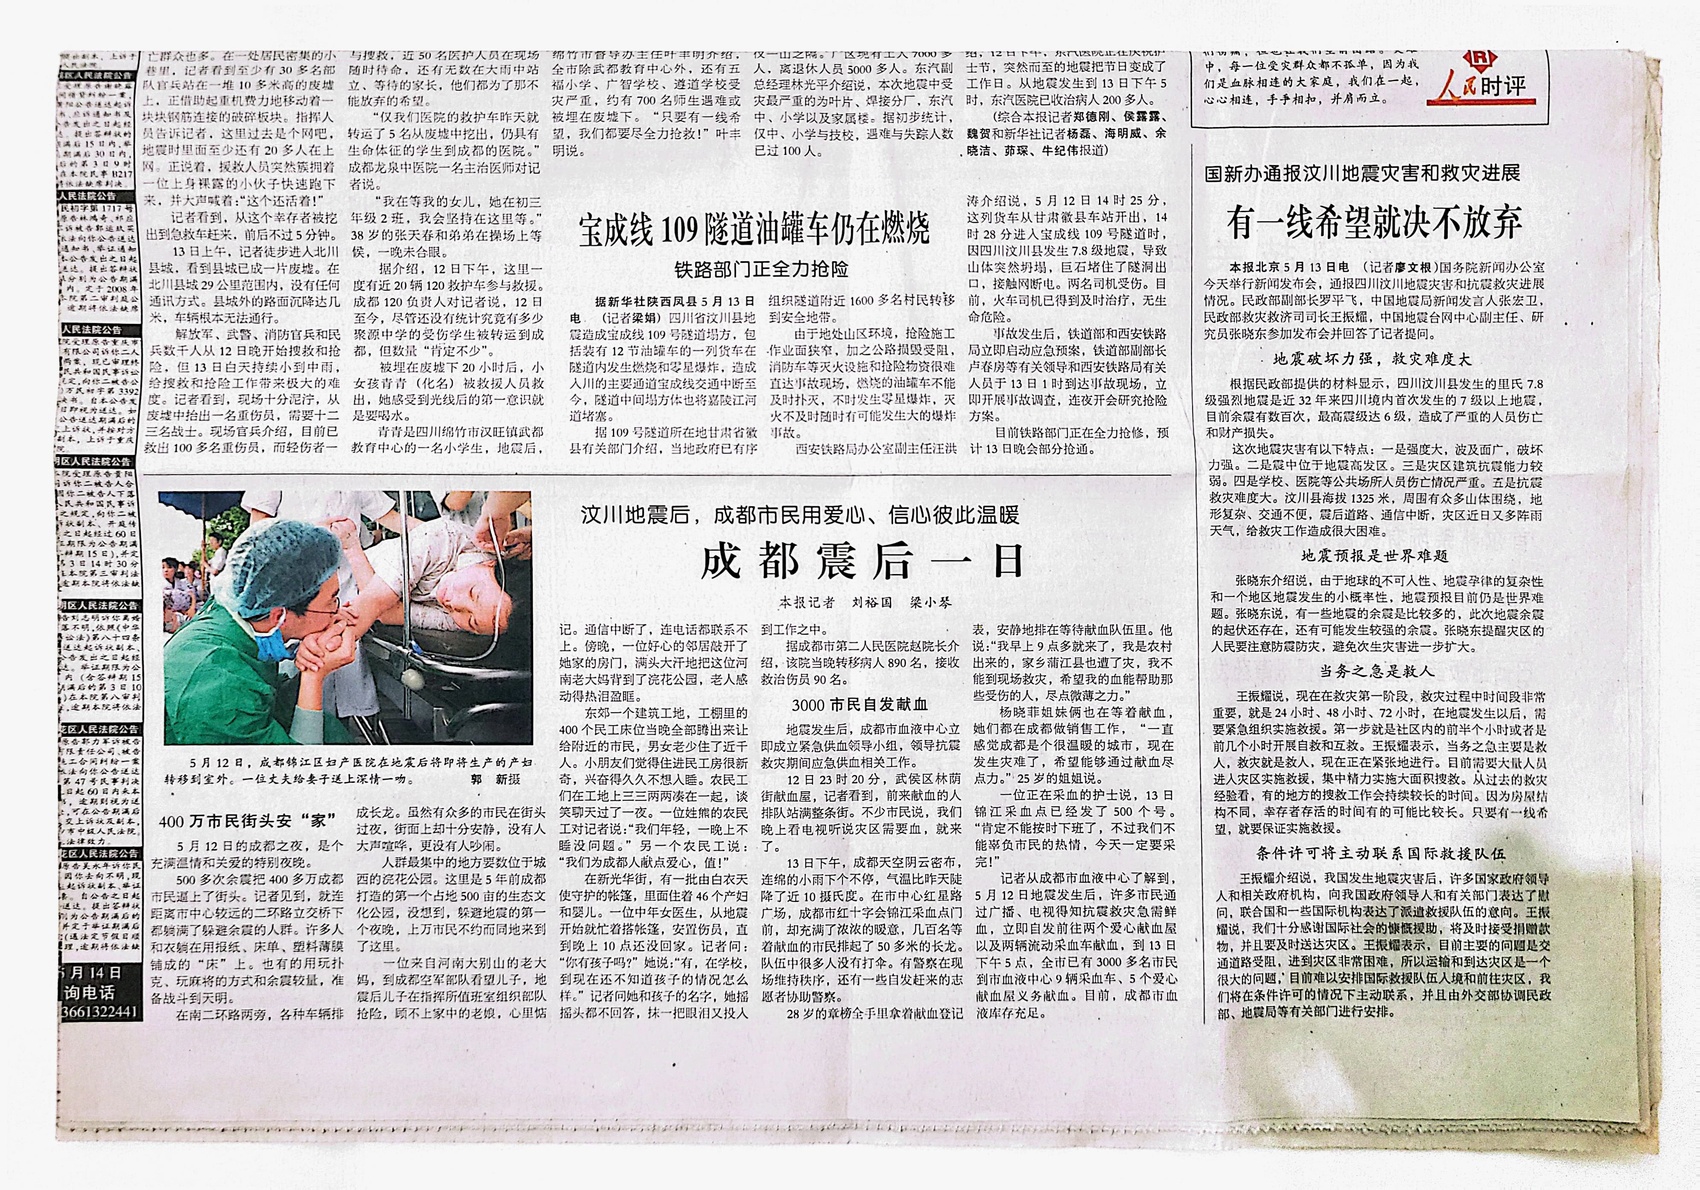 李海分享道,2008年汶川地震时,我父母也是看到报纸后去当地血站献了